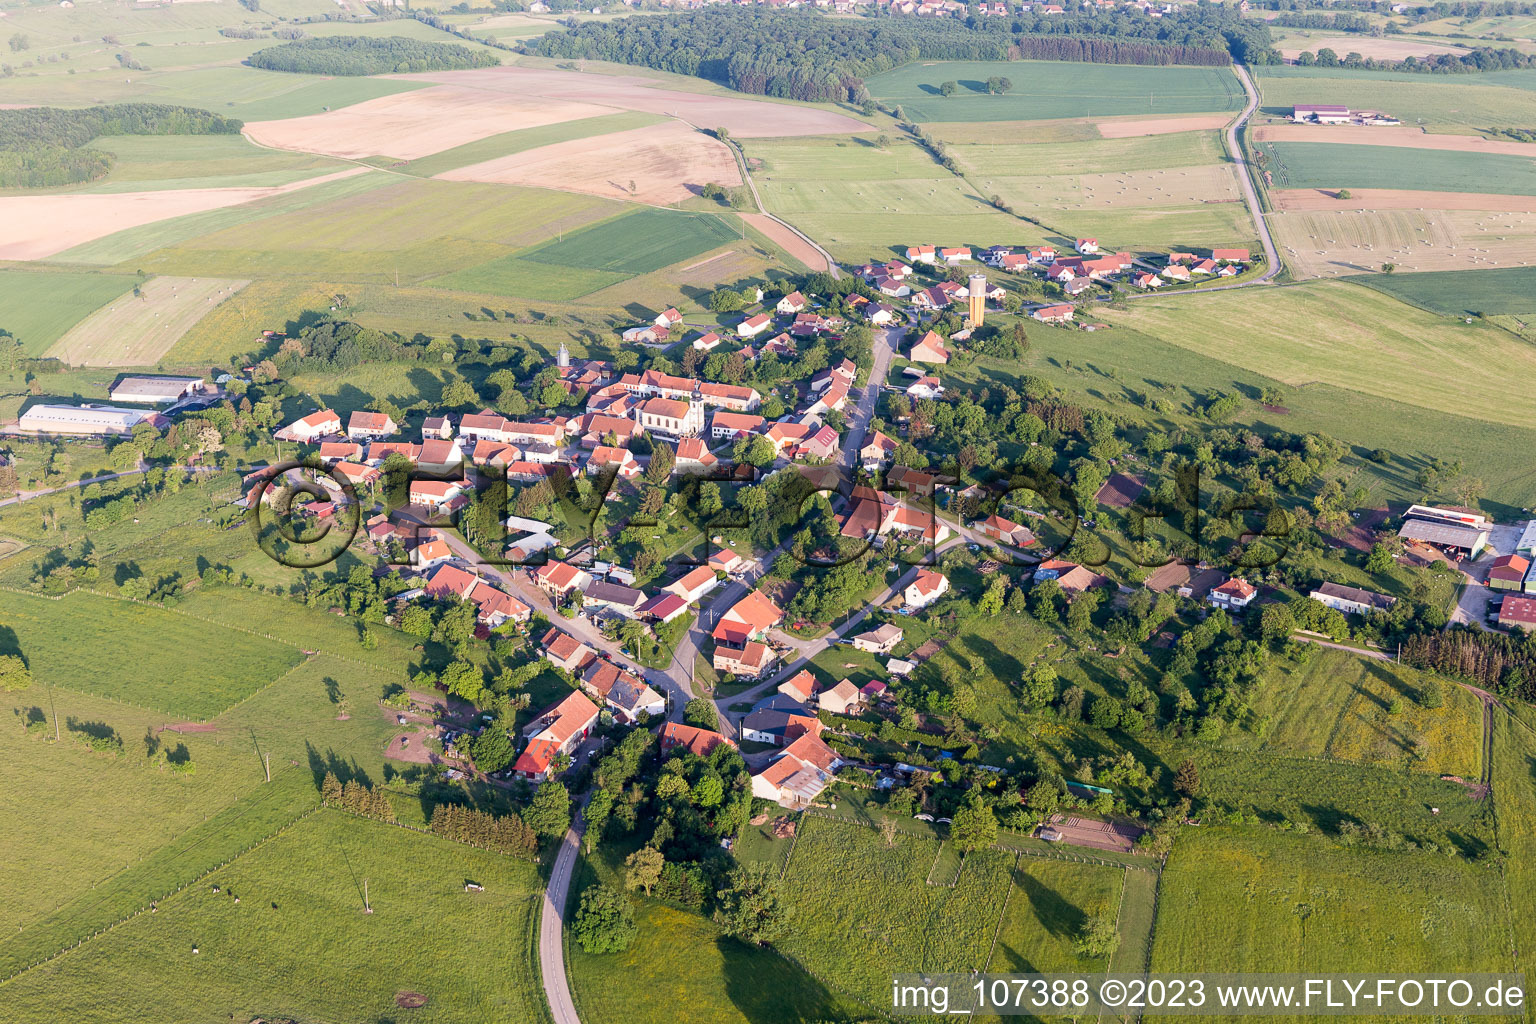 Vue aérienne de Honskirch dans le département Moselle, France